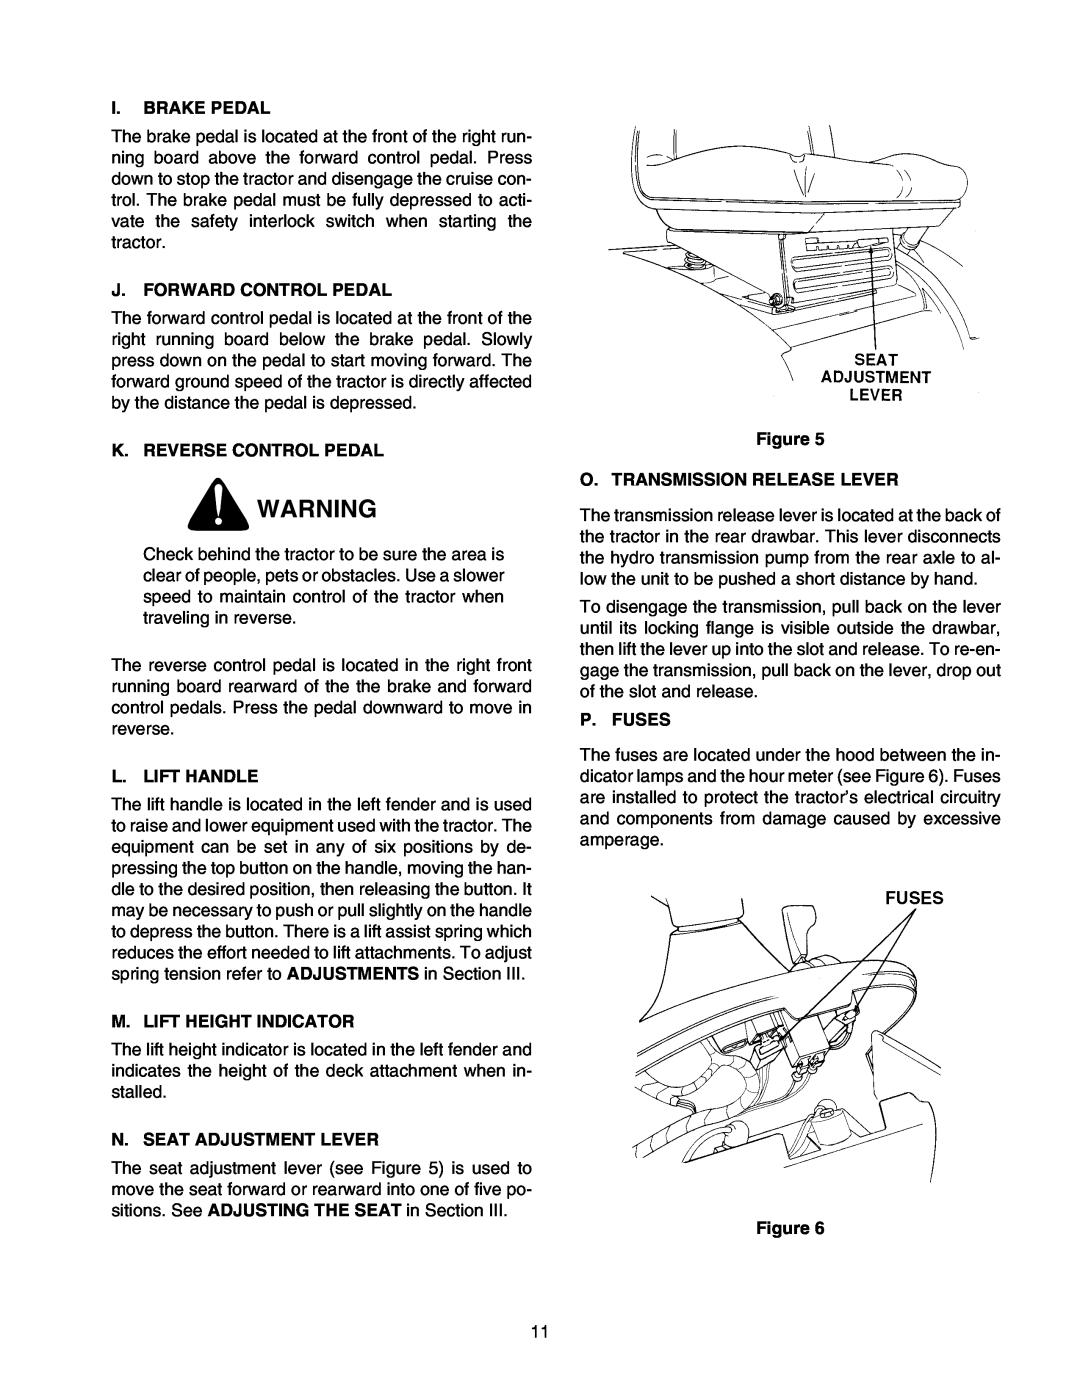 Cub Cadet 2176 manual I. Brake Pedal, J. Forward Control Pedal, K. Reverse Control Pedal, L. Lift Handle, P. Fuses 